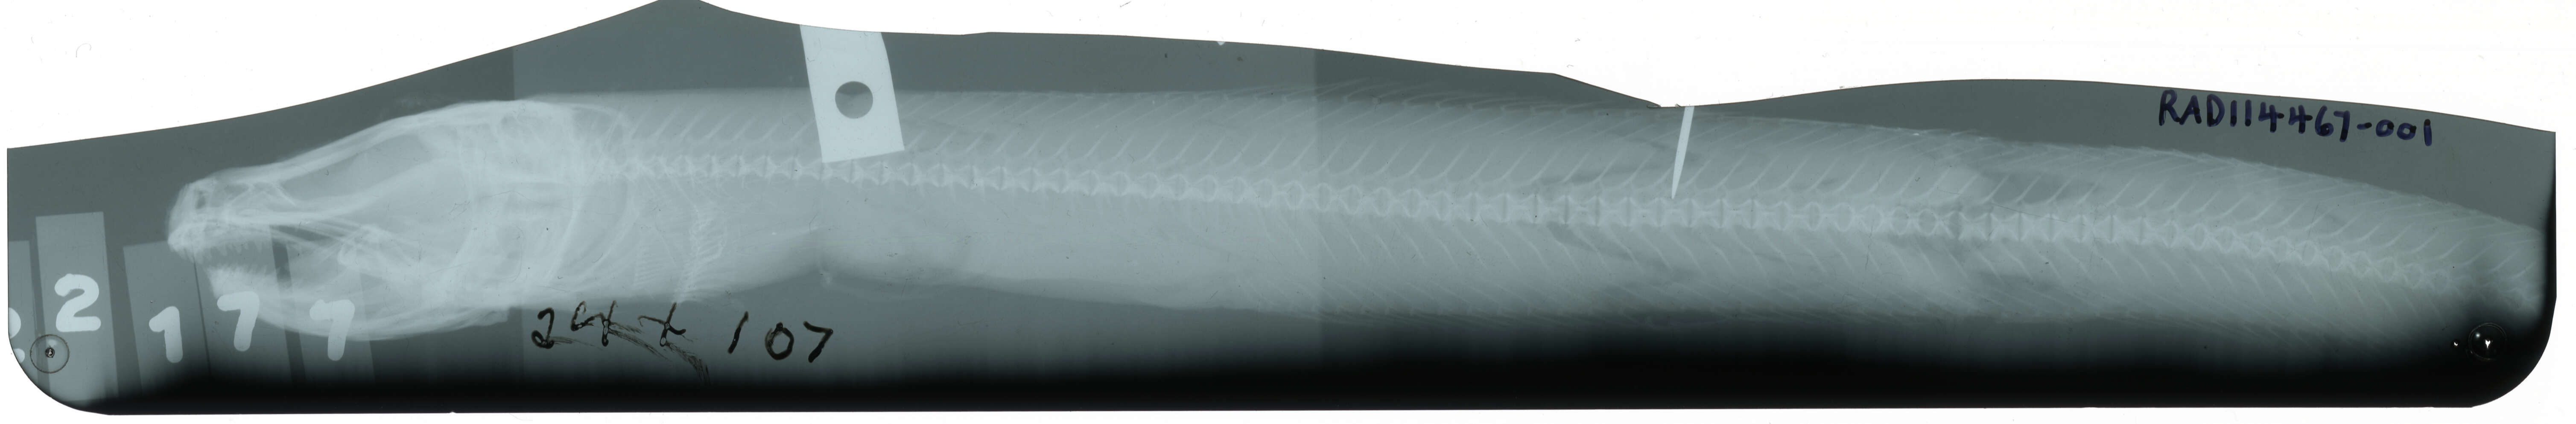 Image of Common wolf eel